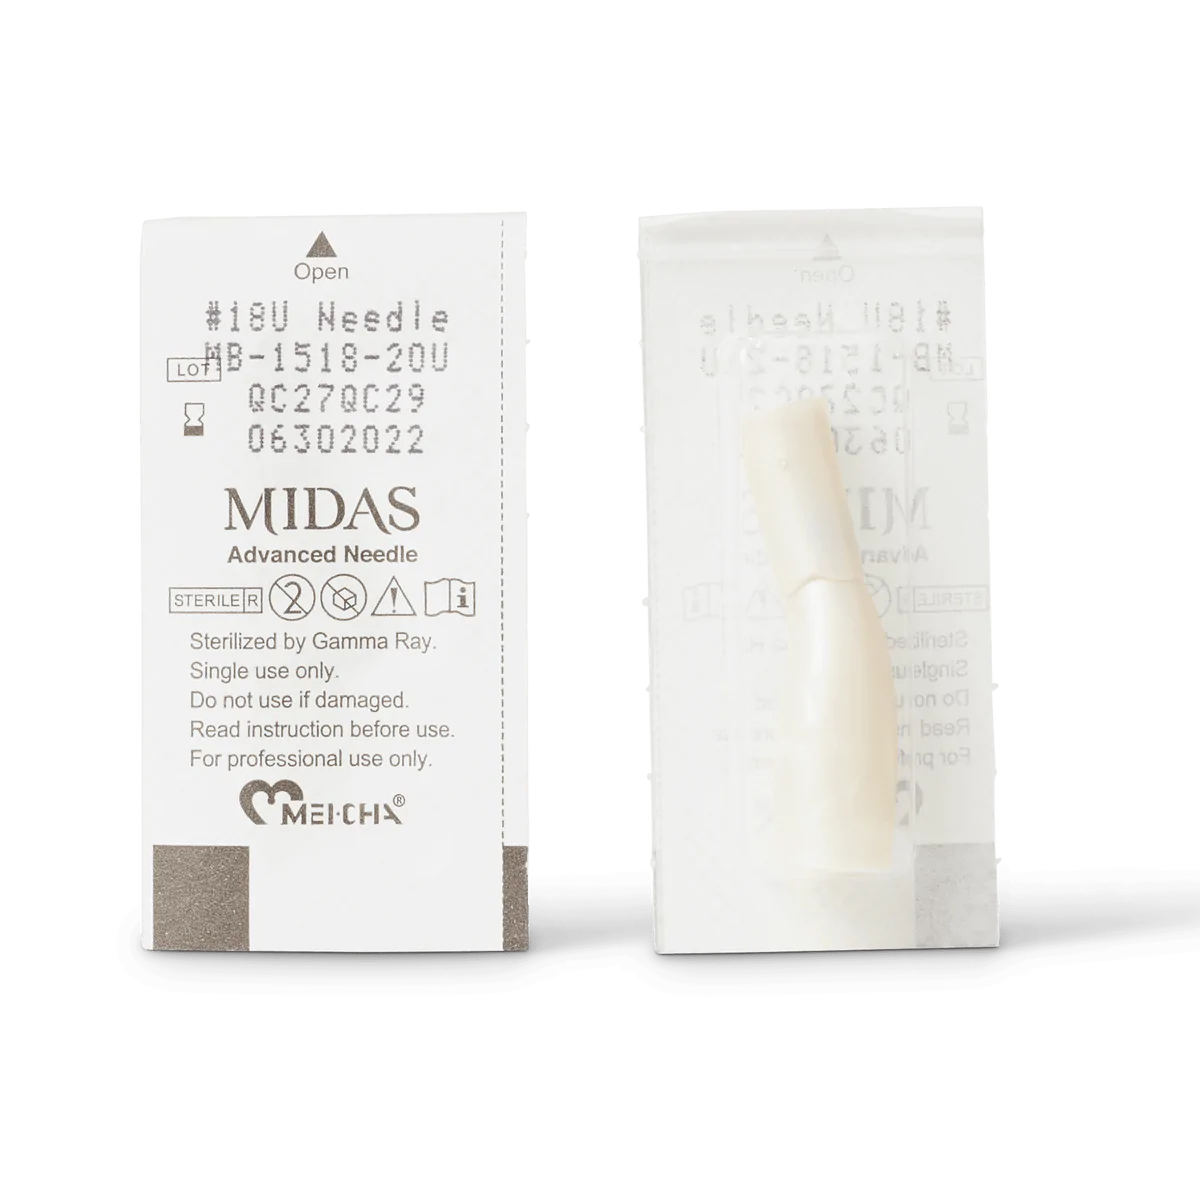 Midas #18U 0.20mm Microblading Needle in packaging